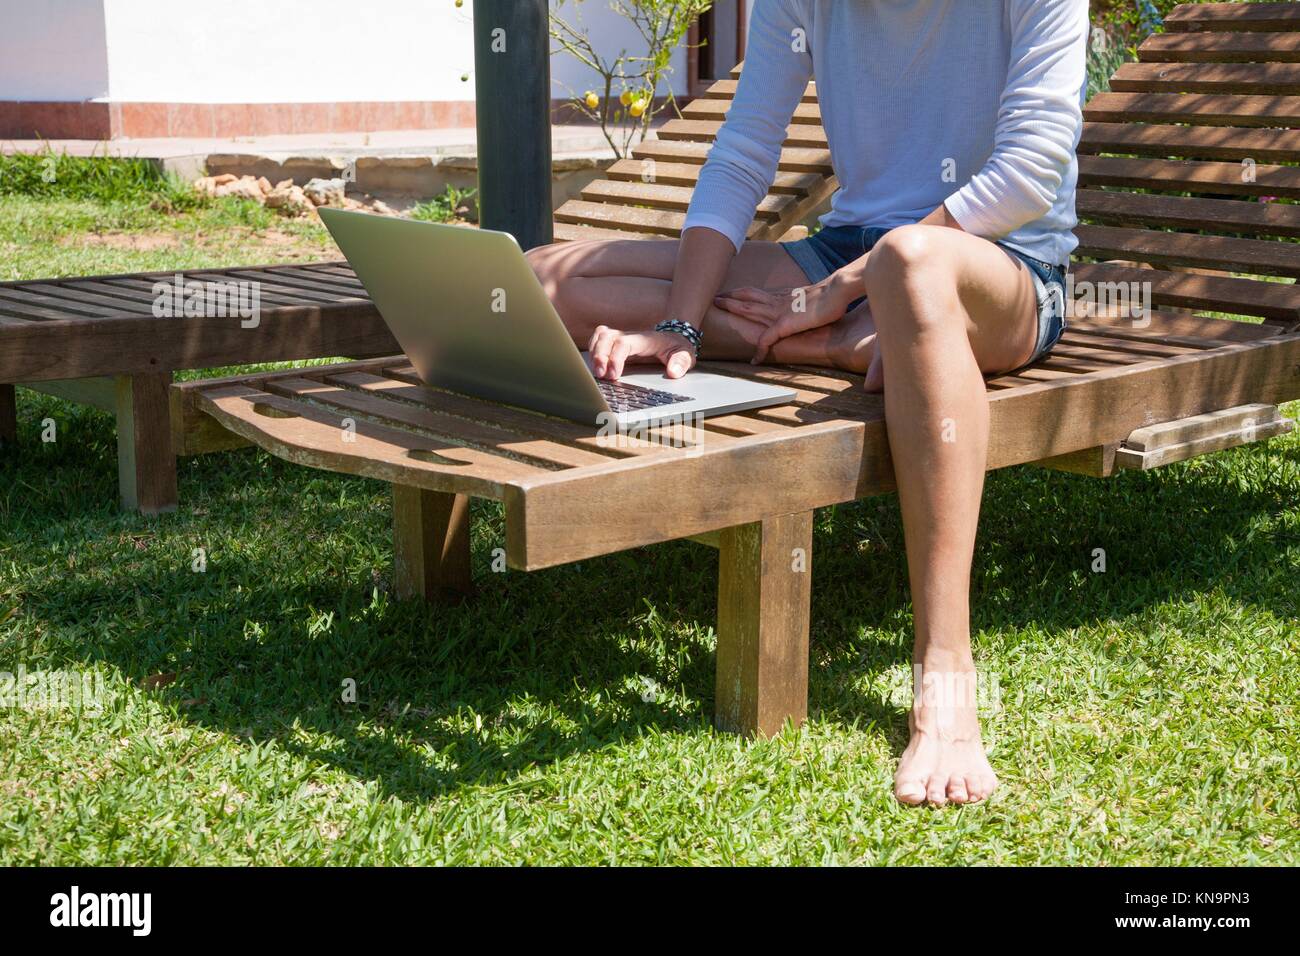 Brunette woman avec chemise blanche et jeans shorts barefoot using laptop  sitting on salon en bois chaise longue à jardin Photo Stock - Alamy